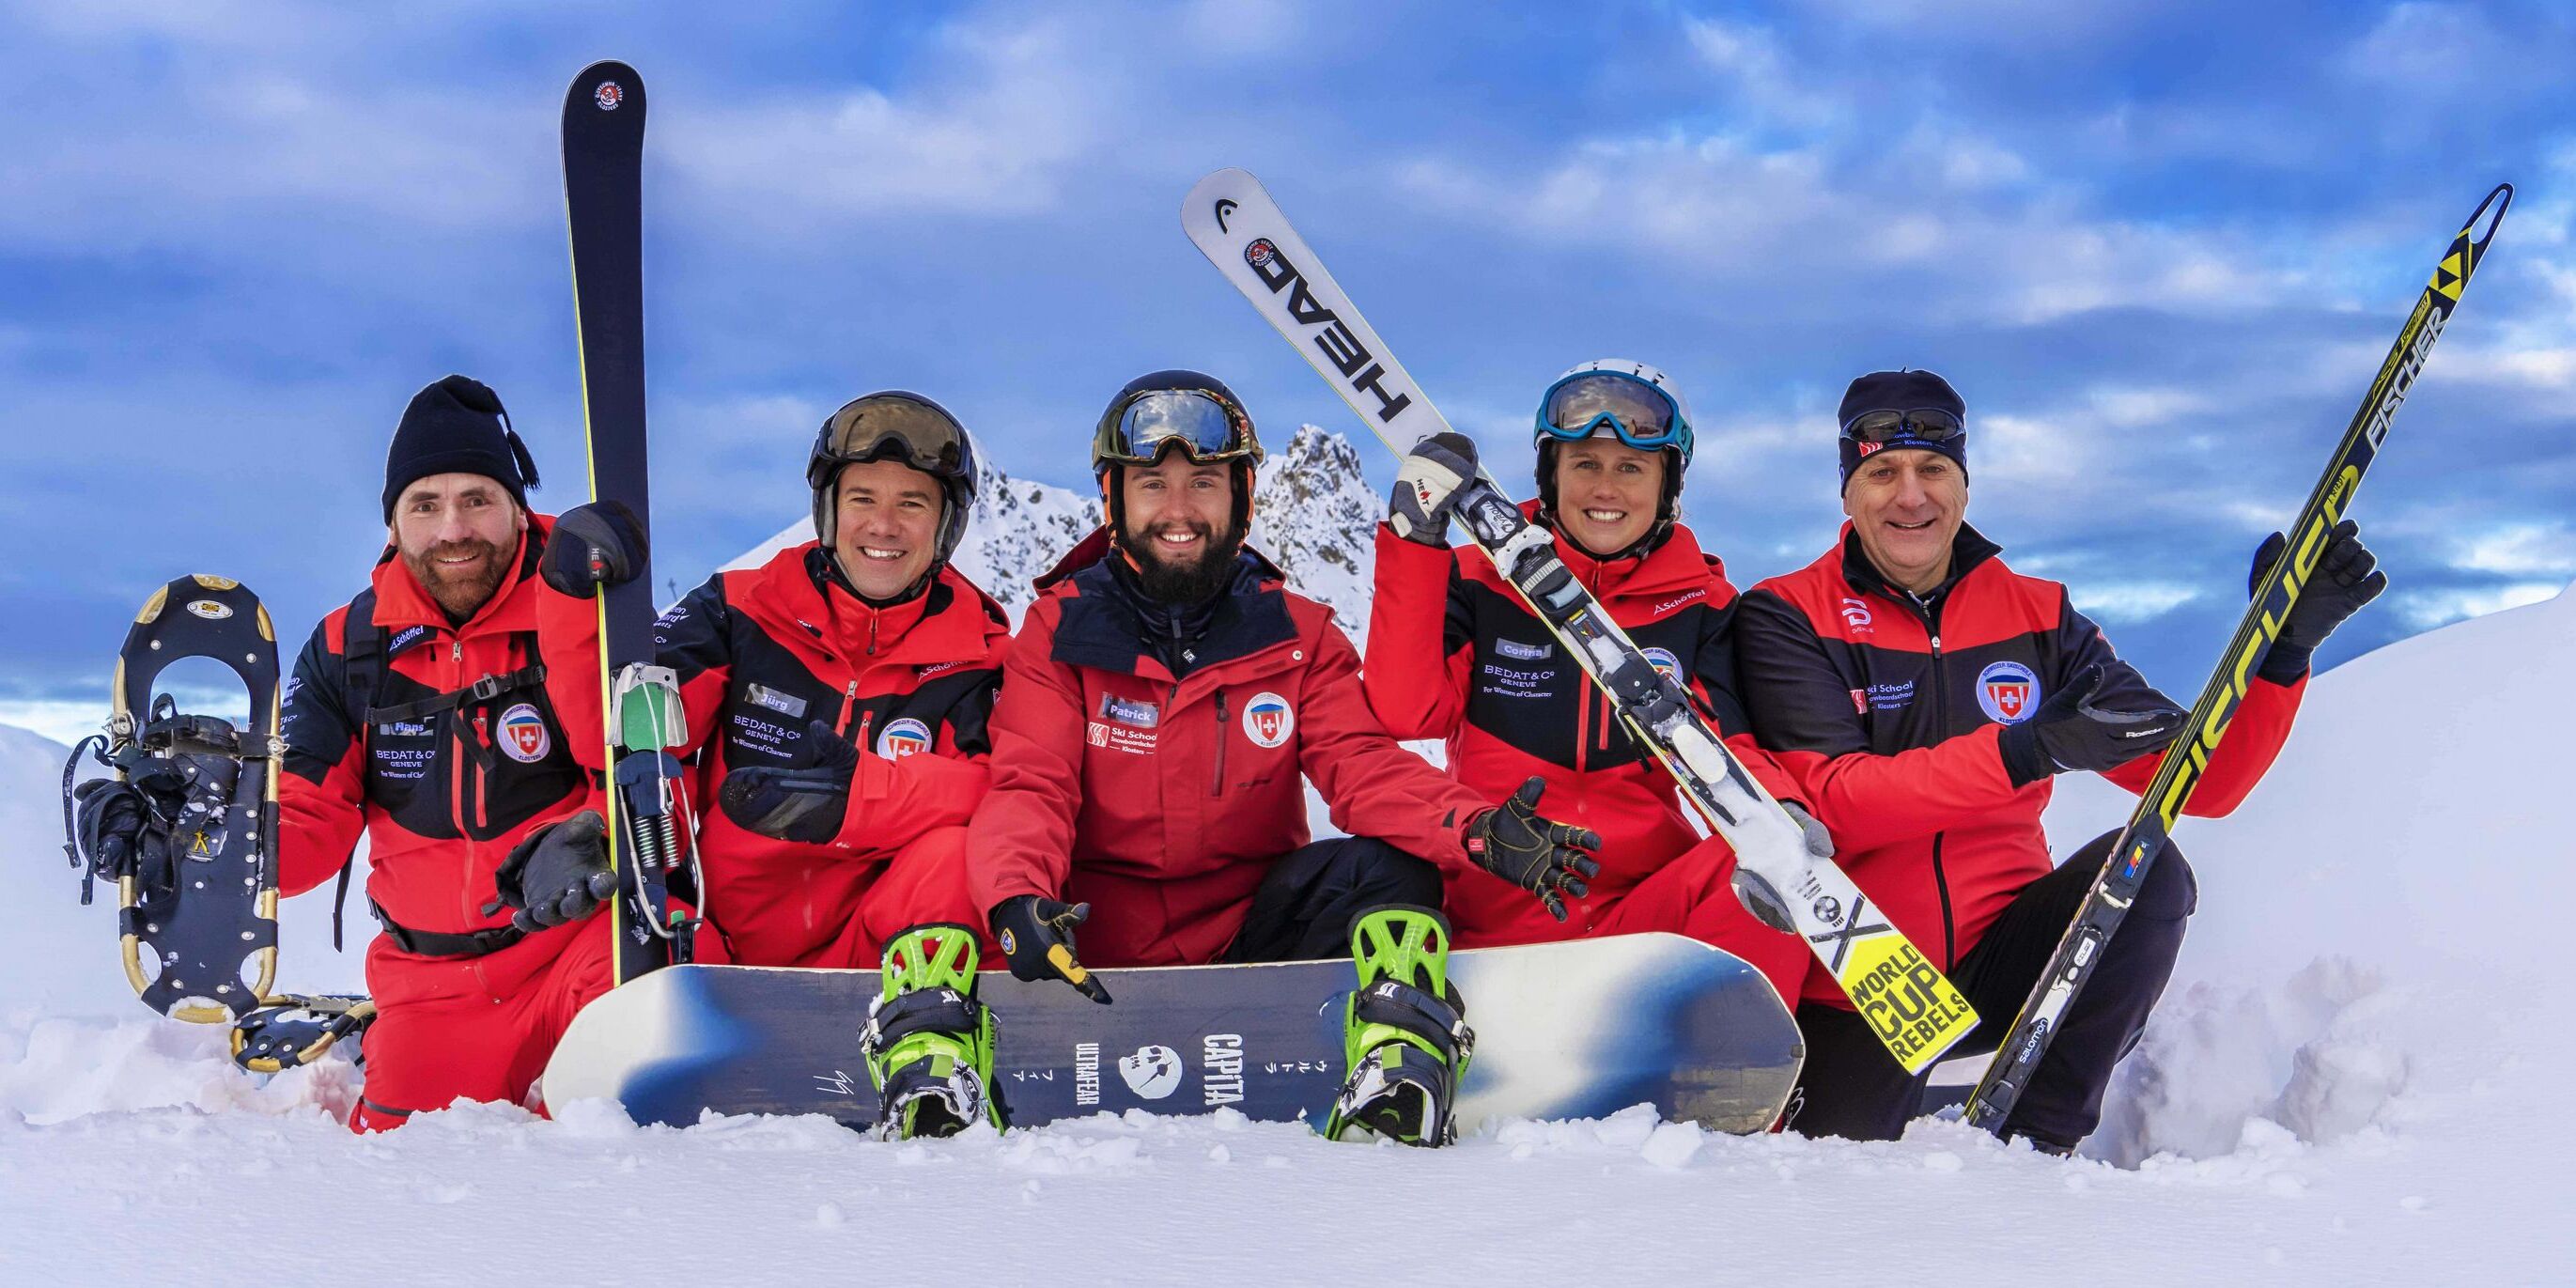 Team der Skischule Klosters posiert im Skigebiet 